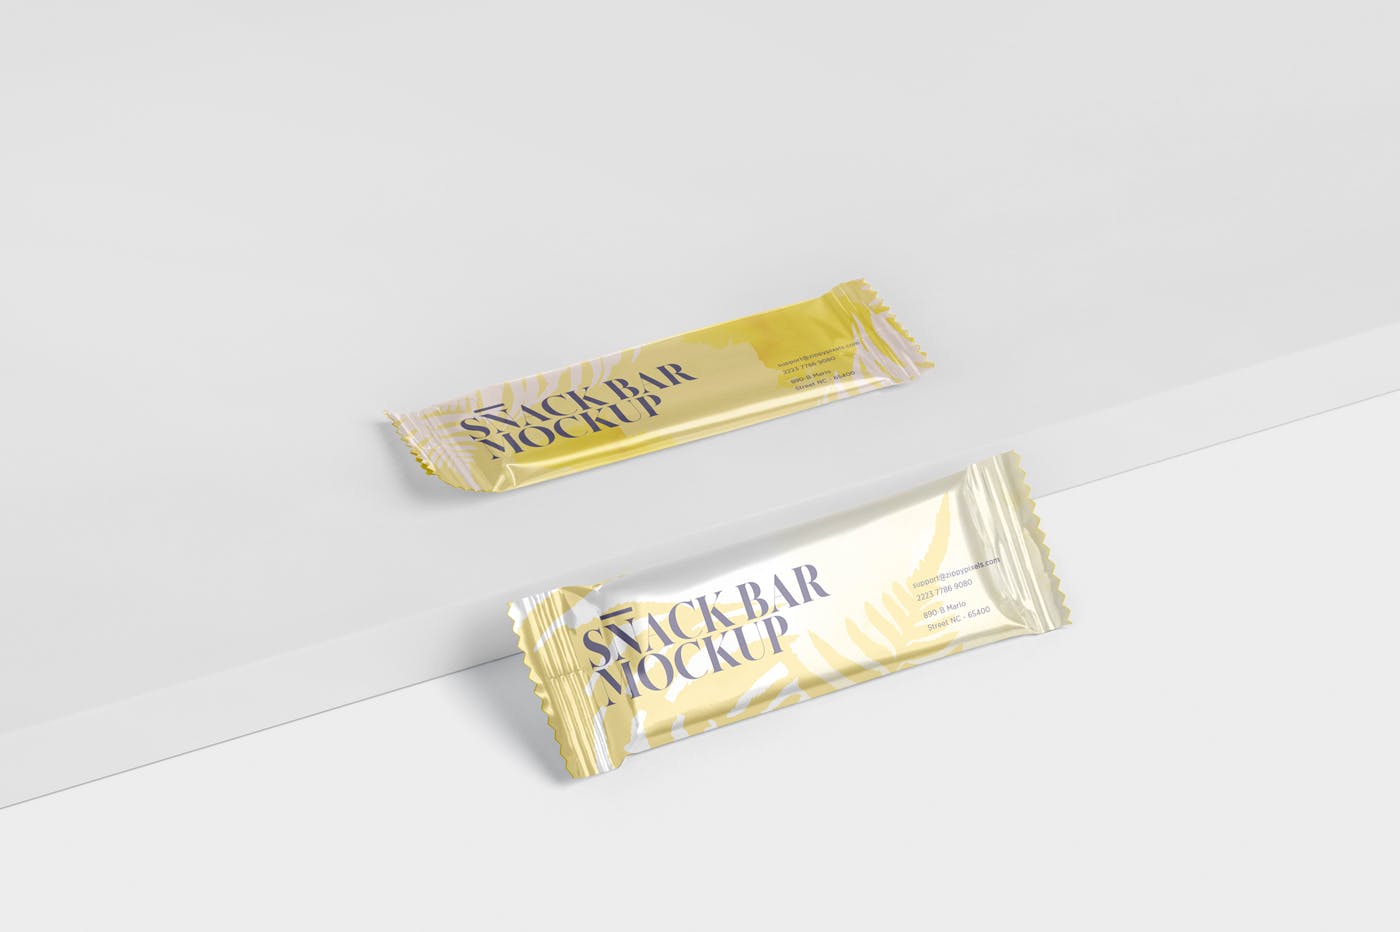 零食糖果包装袋设计效果图非凡图库精选 Snack Bar Mockup – Slim Rectangular插图(5)